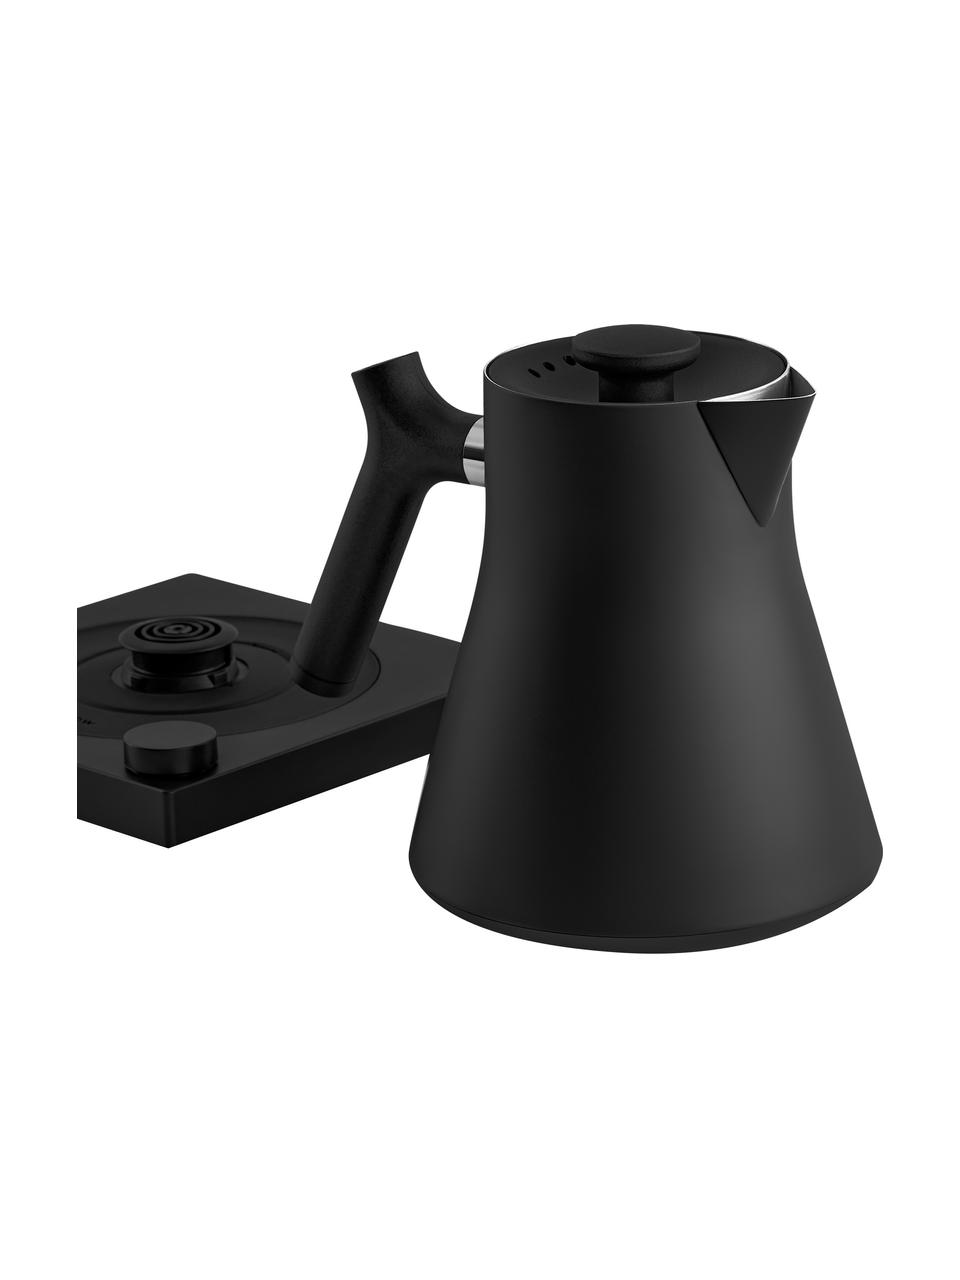 Elektrischer Wasserkocher Corvo, 0.9 L, Gehäuse: Stahl, beschichtet, Schwarz, B 17 x H 20 cm